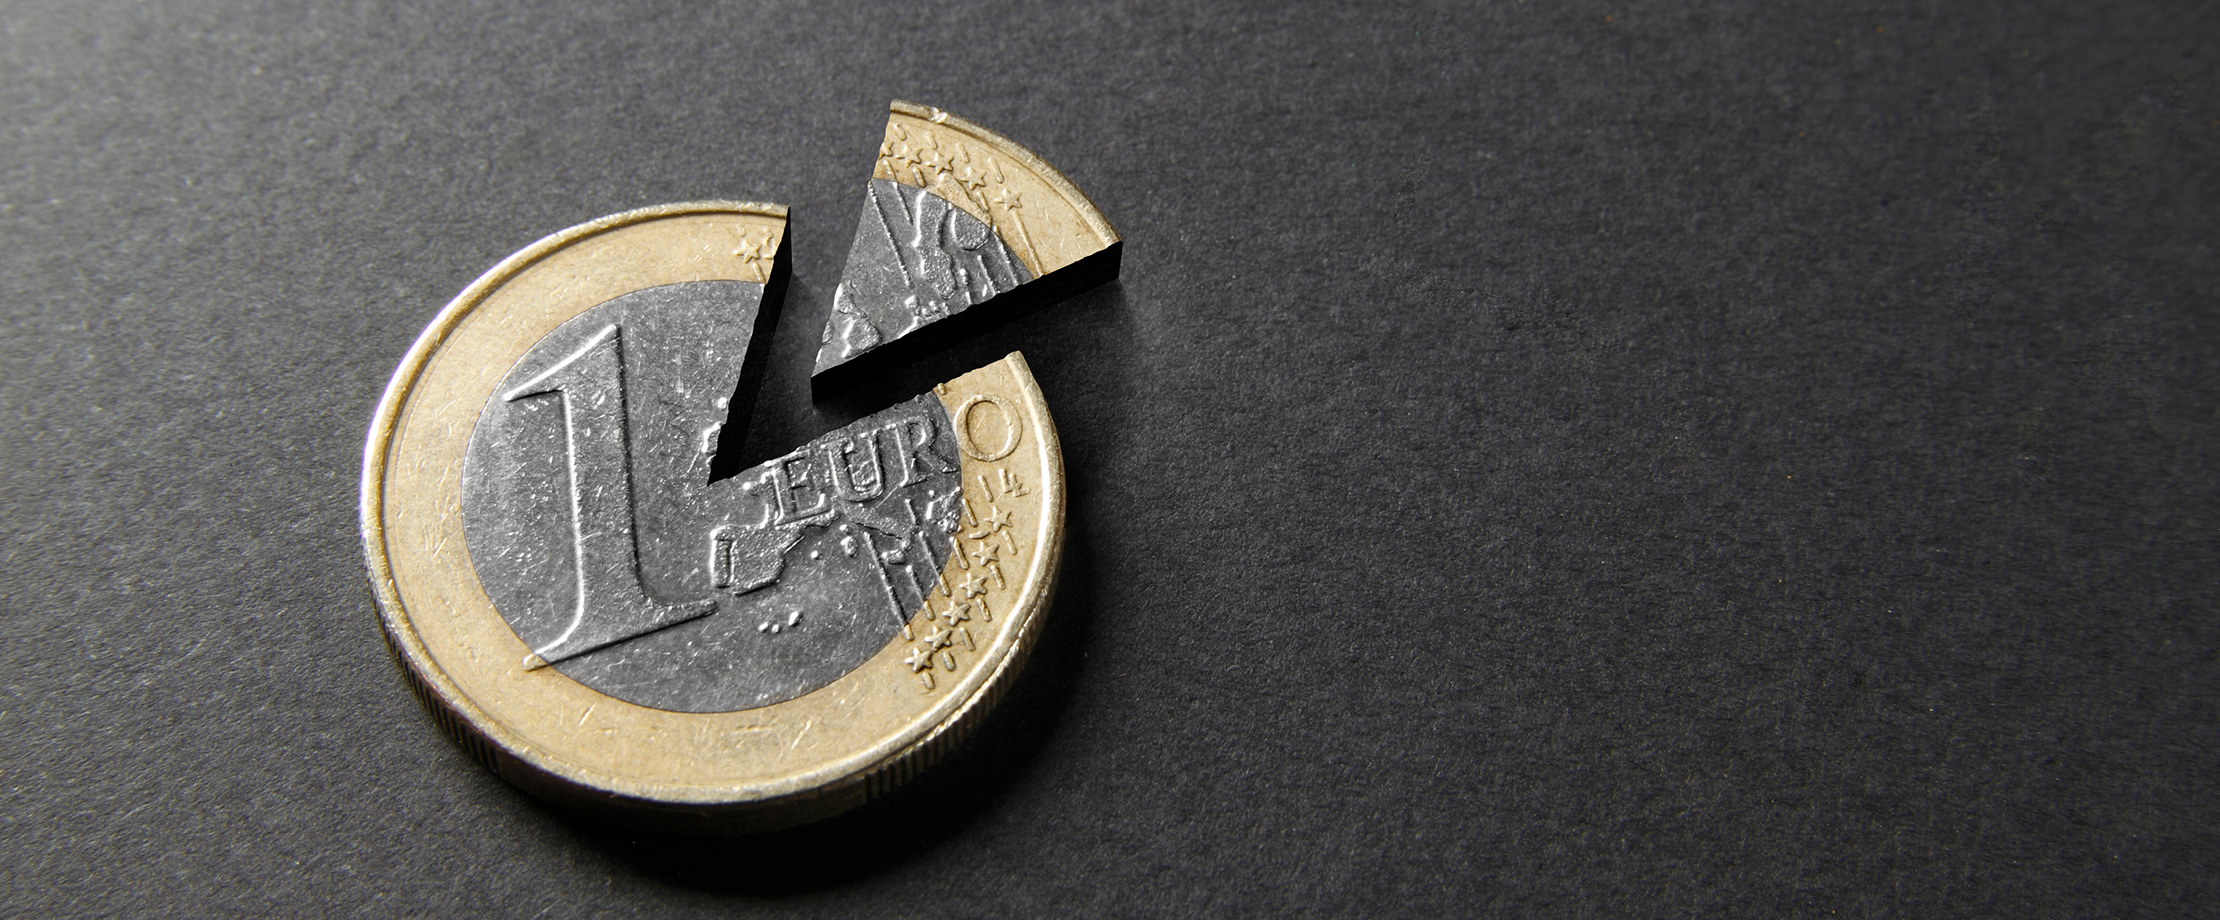 Ein 1-Euro-Sück liegt auf einer schwarzen Tischplatte. Ein kuchenförmiges Stück wurde aus dem Euro ausgeschnitten und liegt abgetrennt daneben. 